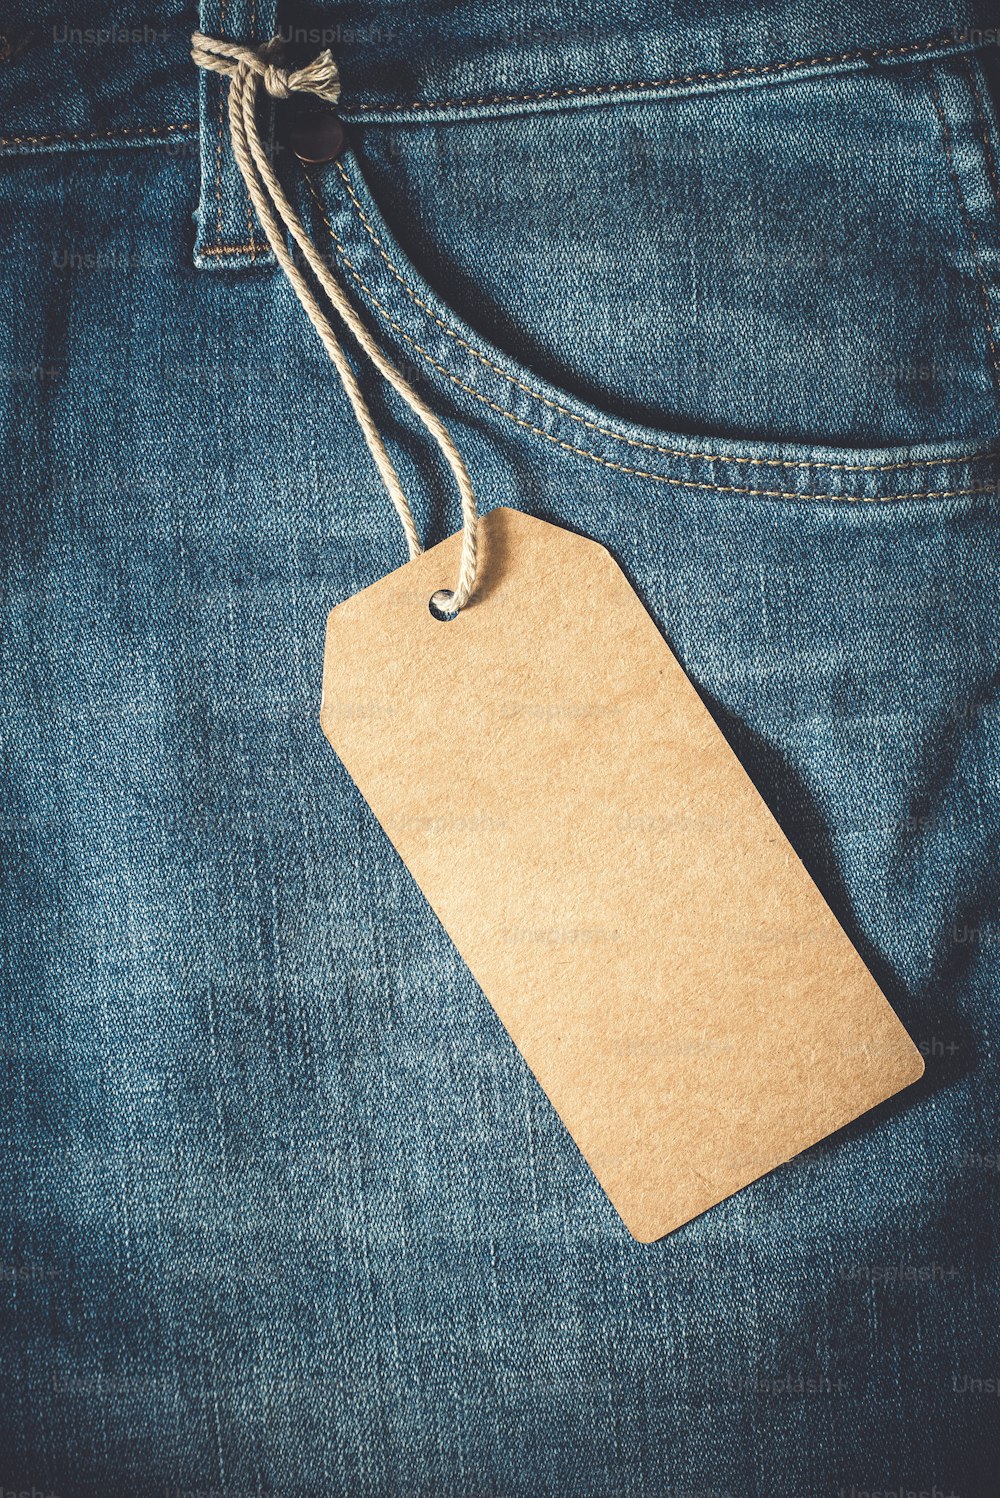 Etiqueta de papel marrón vacía de jean. Estilo de efecto de color vintage.